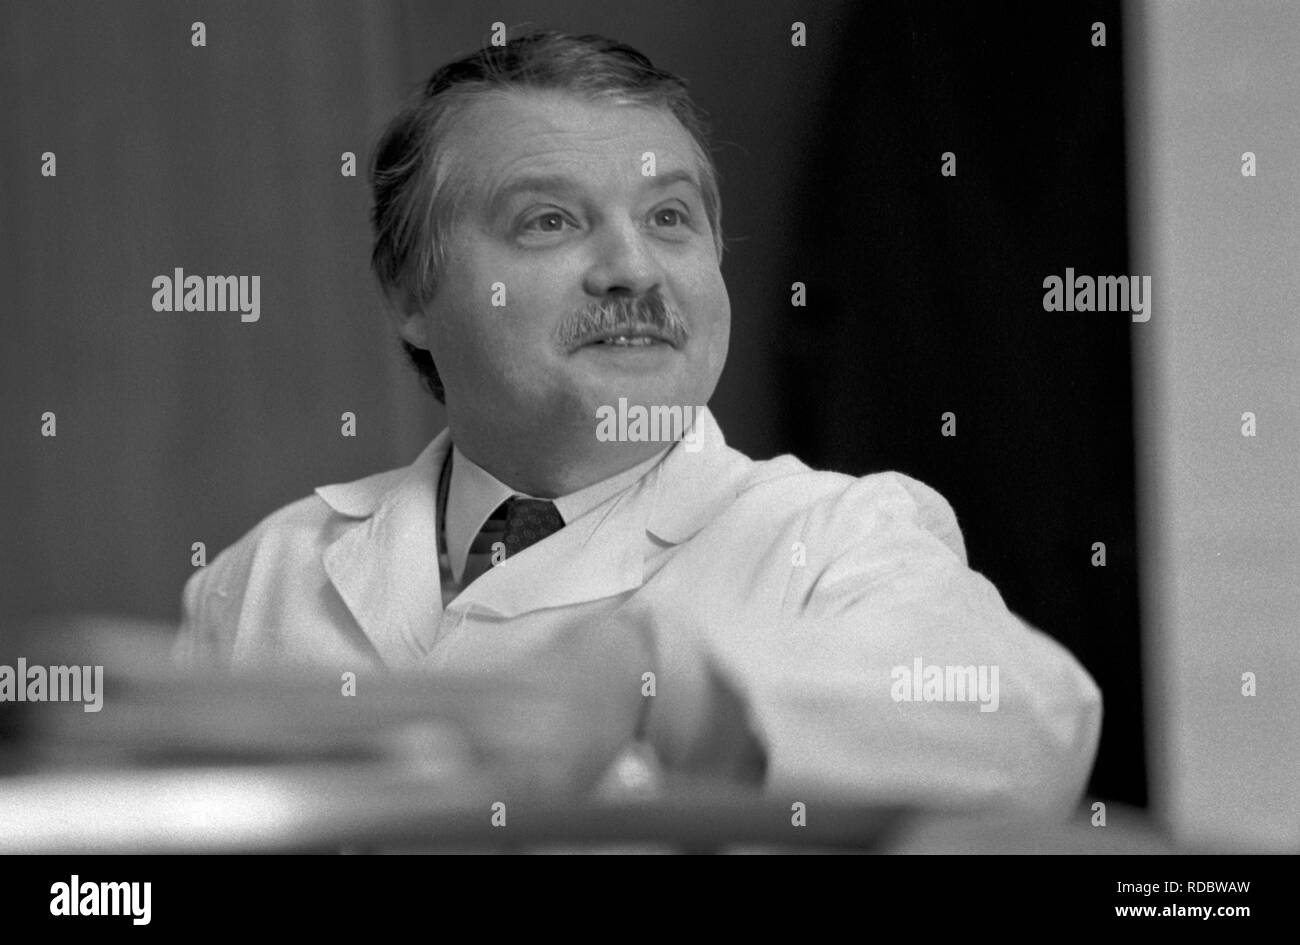 Professor Luc Montagnier portrait at the Pasteur Institute, Institut Pasteur Paris France 1980s Cure HIV AIDS  France. HOMER SYKES Stock Photo